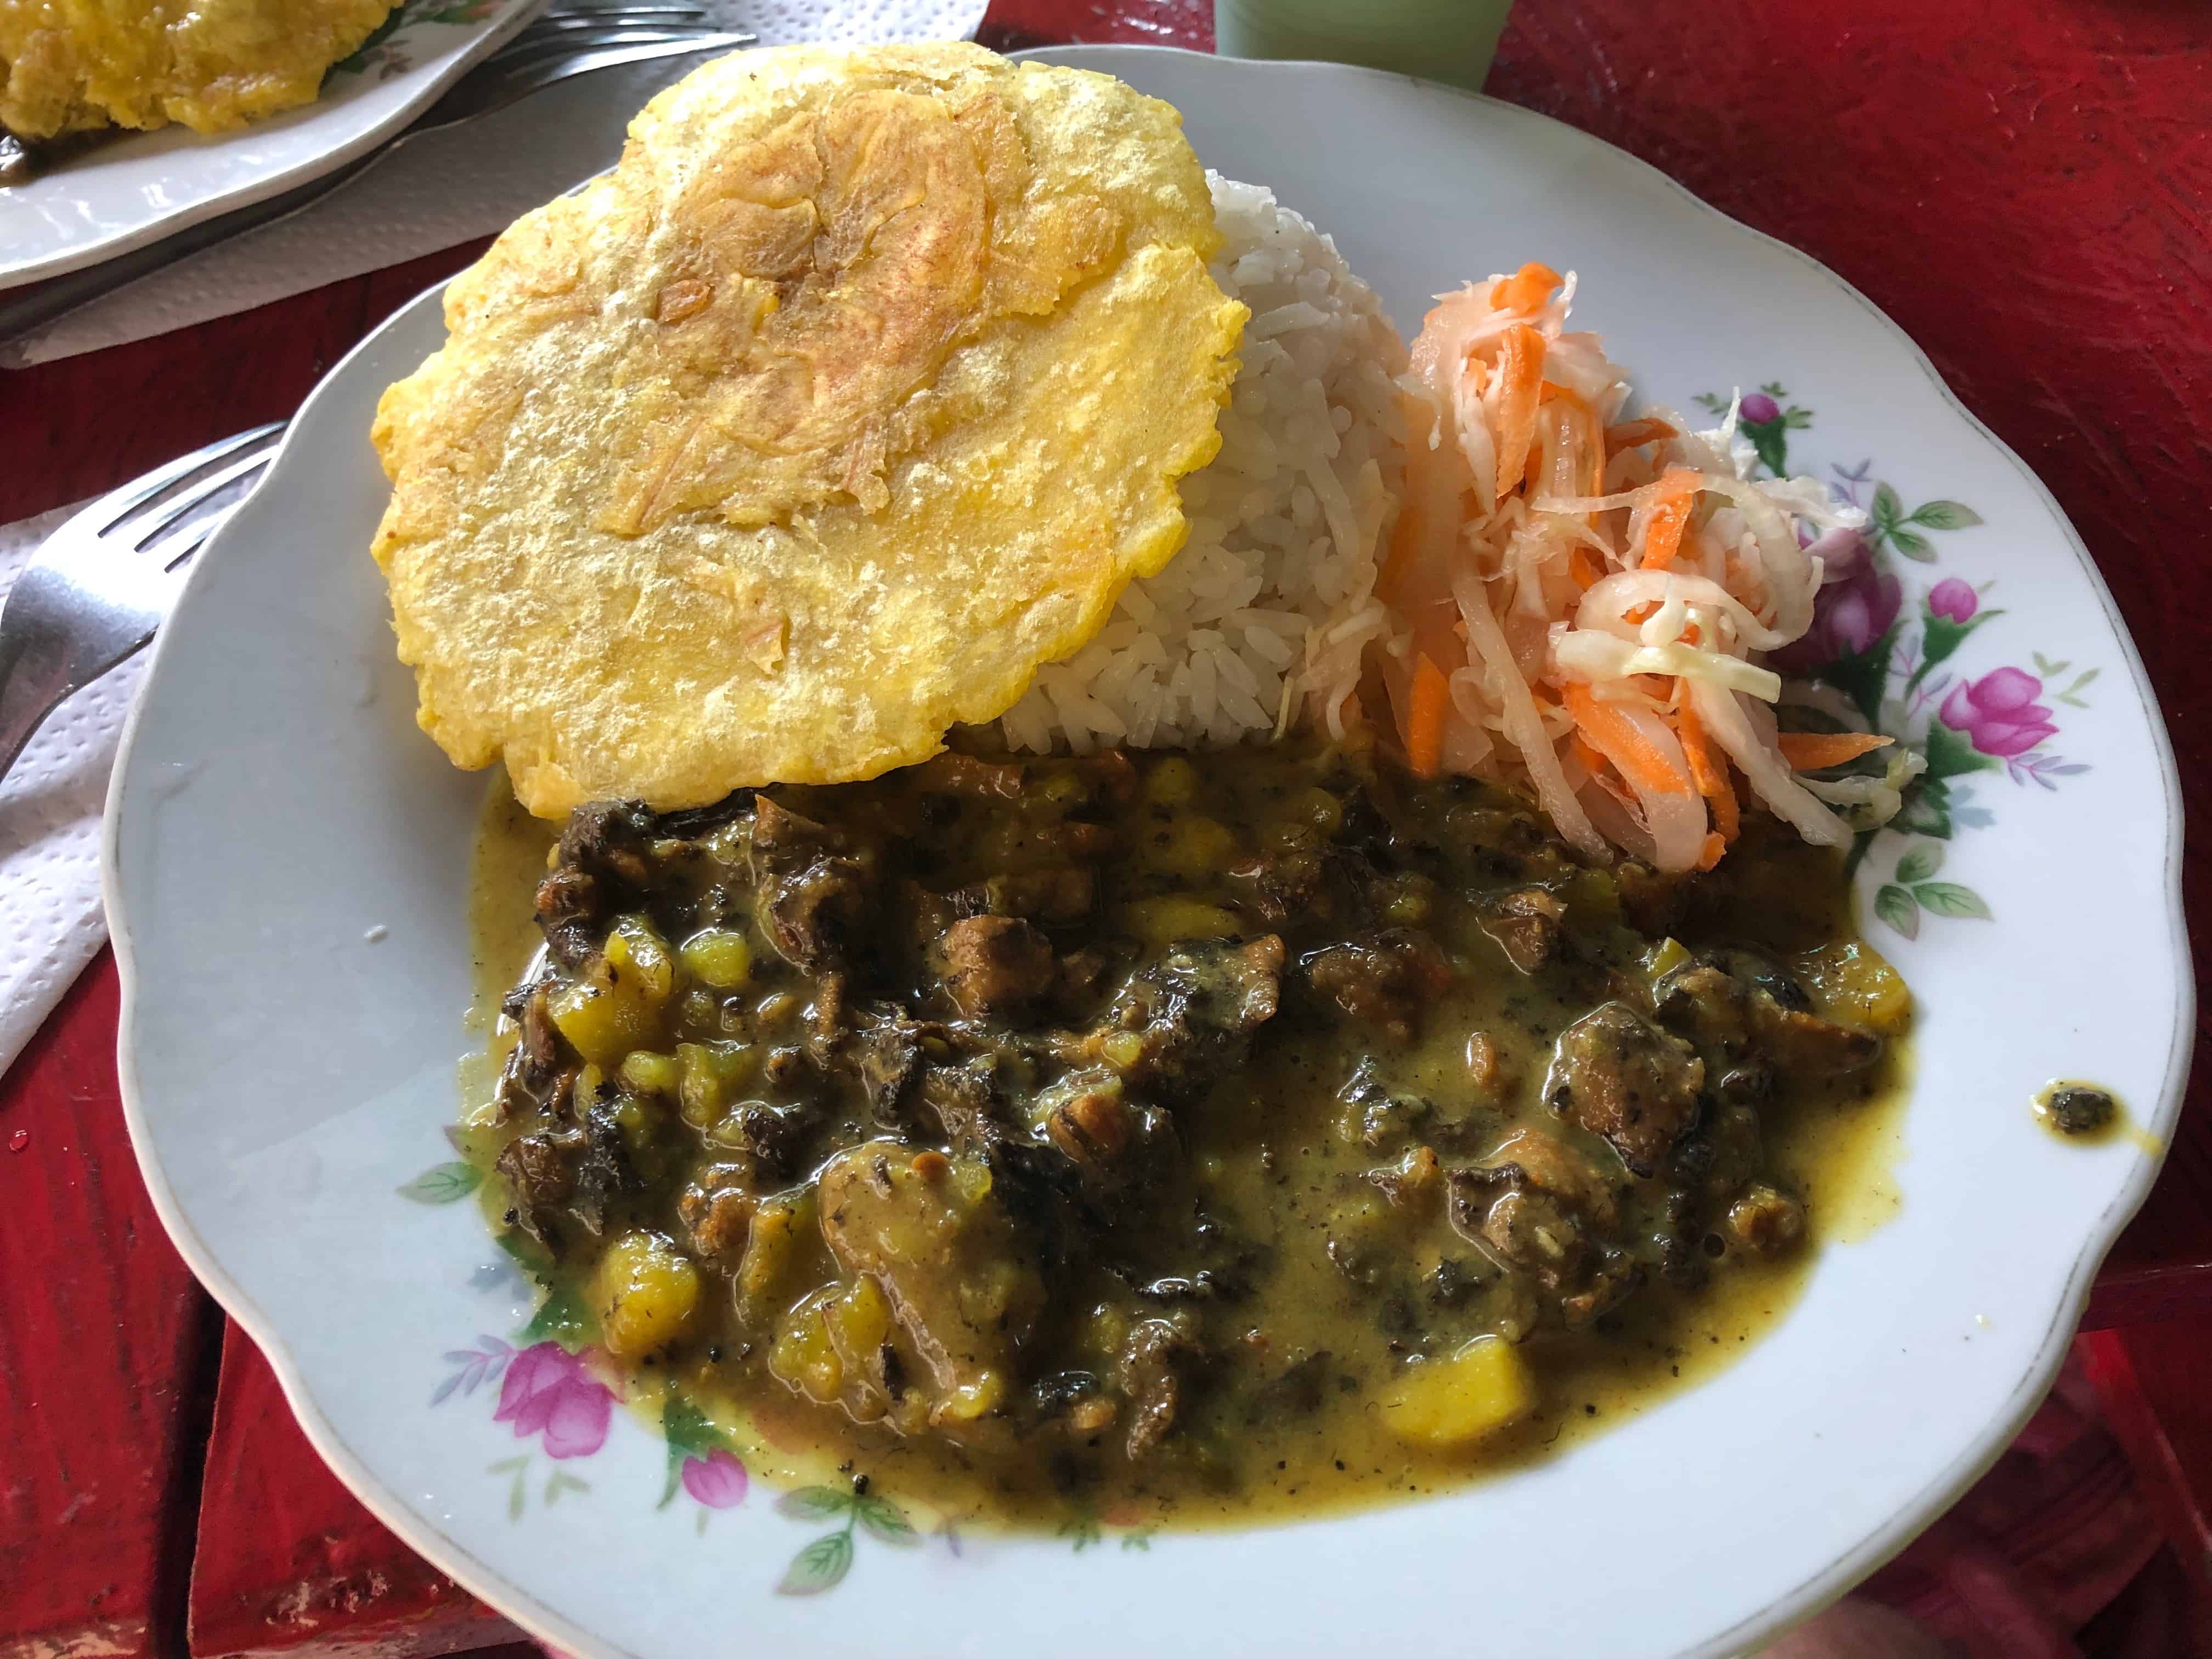 Piangua at Restaurante Jasin in San Cipriano, Valle del Cauca, Colombia